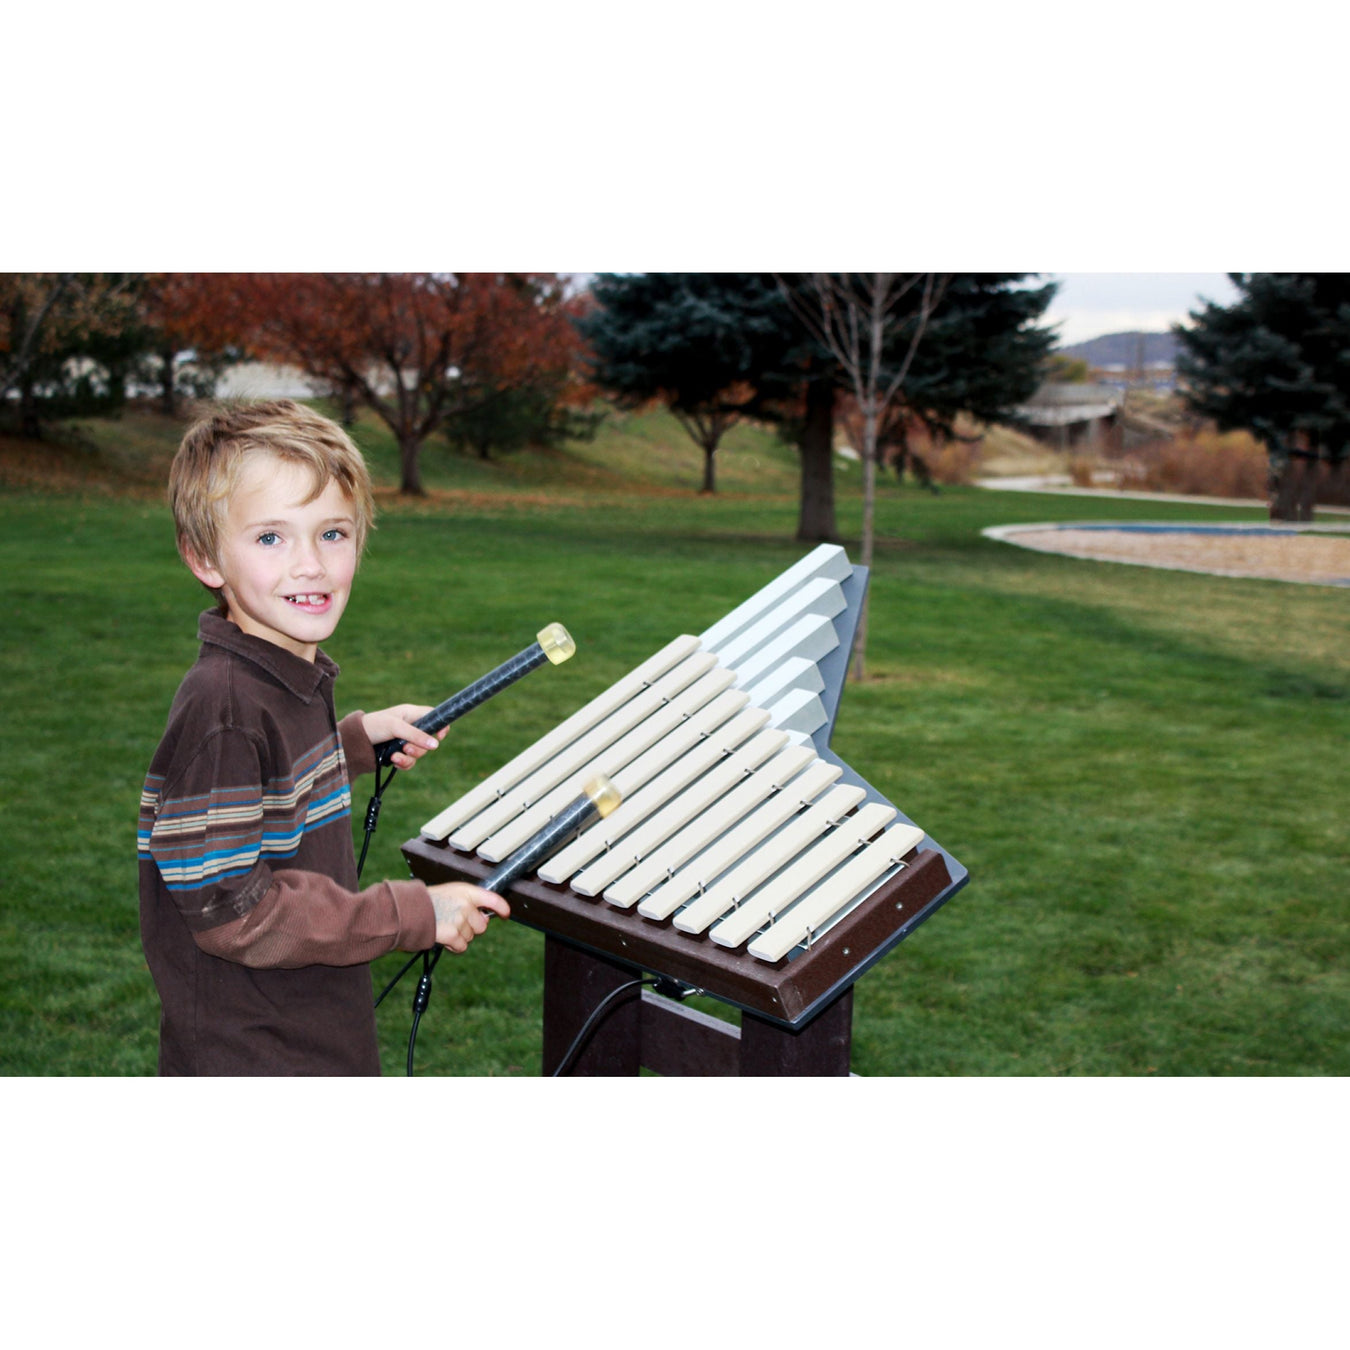 Outdoor Musical Equipment For Preschoolers